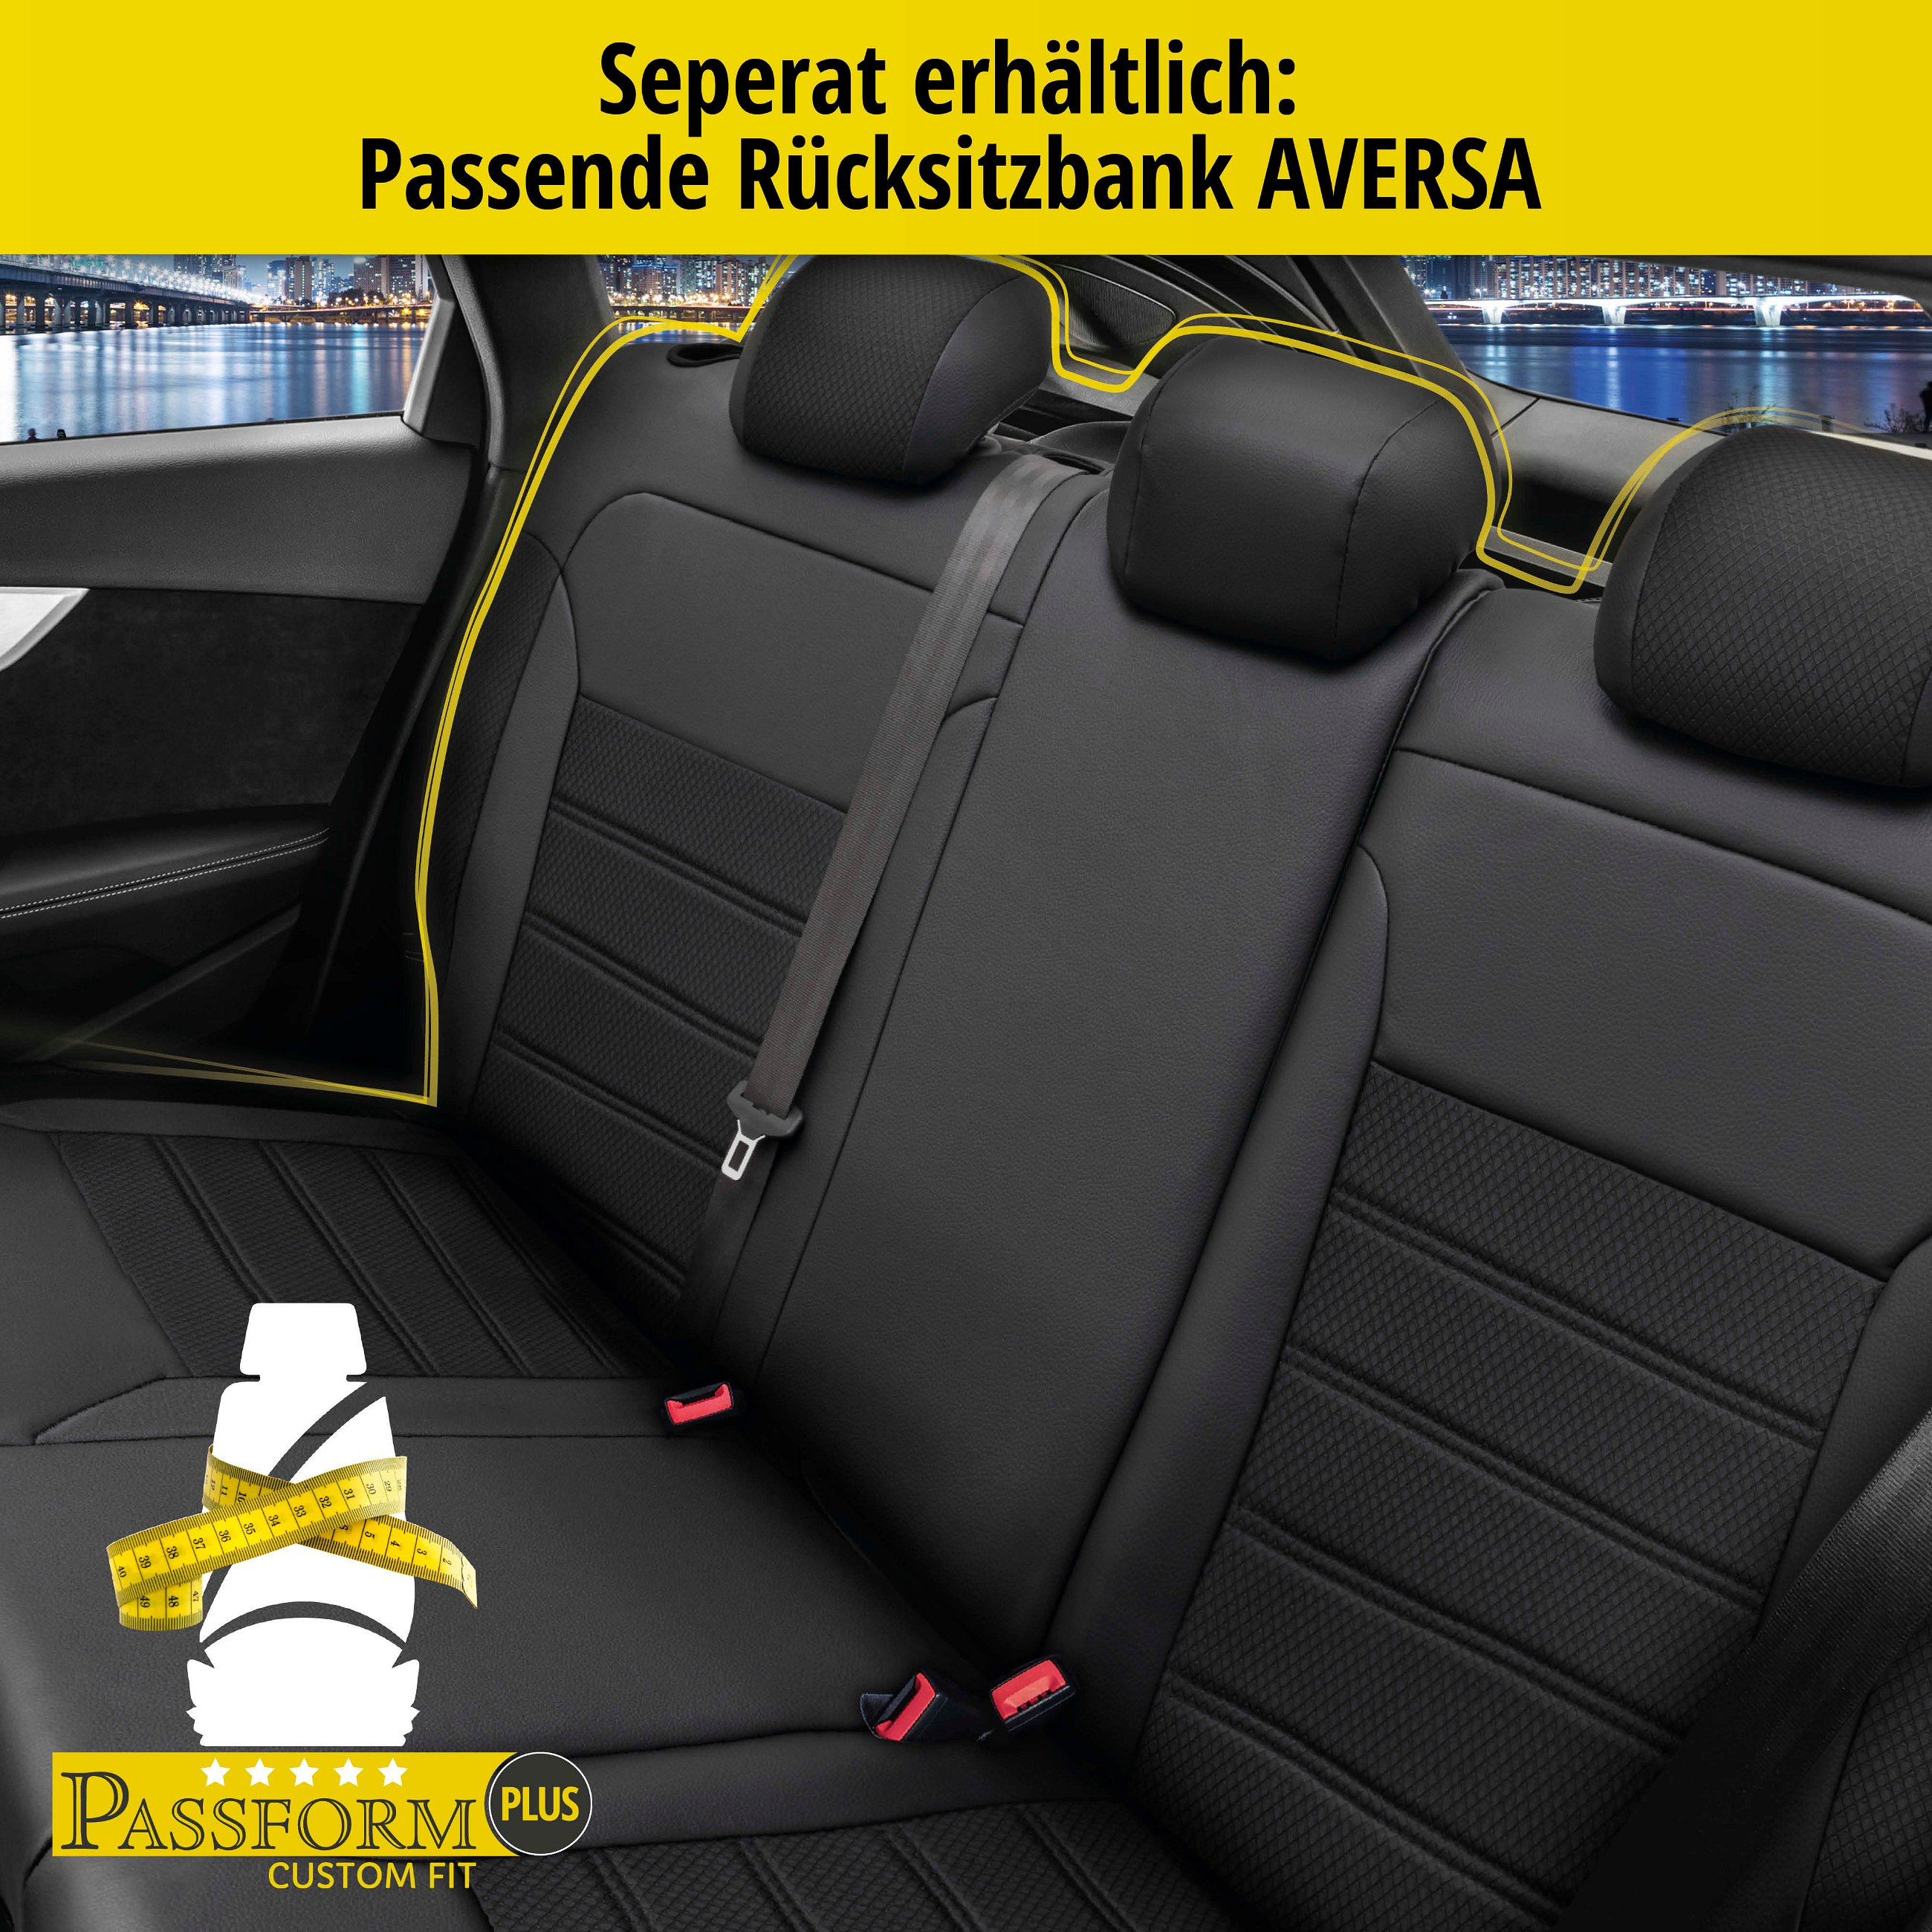 Passform Sitzbezug Aversa für Skoda YETI (5L) 05/2009-12/2017, 2 Einzelsitzbezüge für Normalsitze